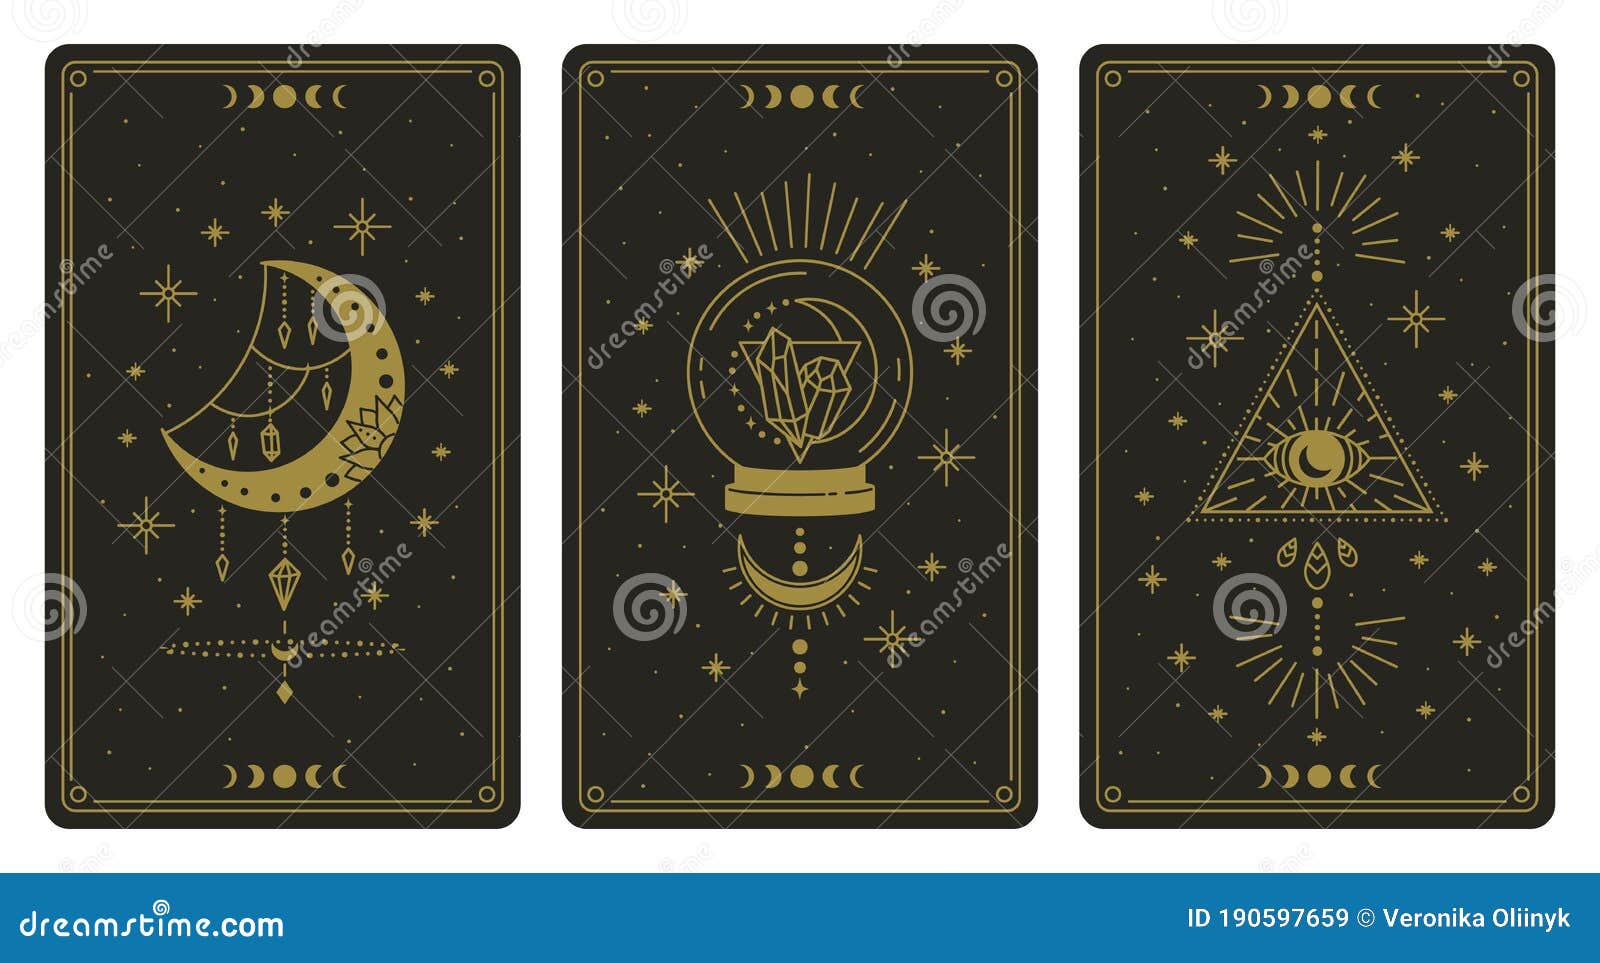 magical tarot cards. magic occult tarot cards, esoteric boho spiritual tarot reader moon, crystal and magic eye s